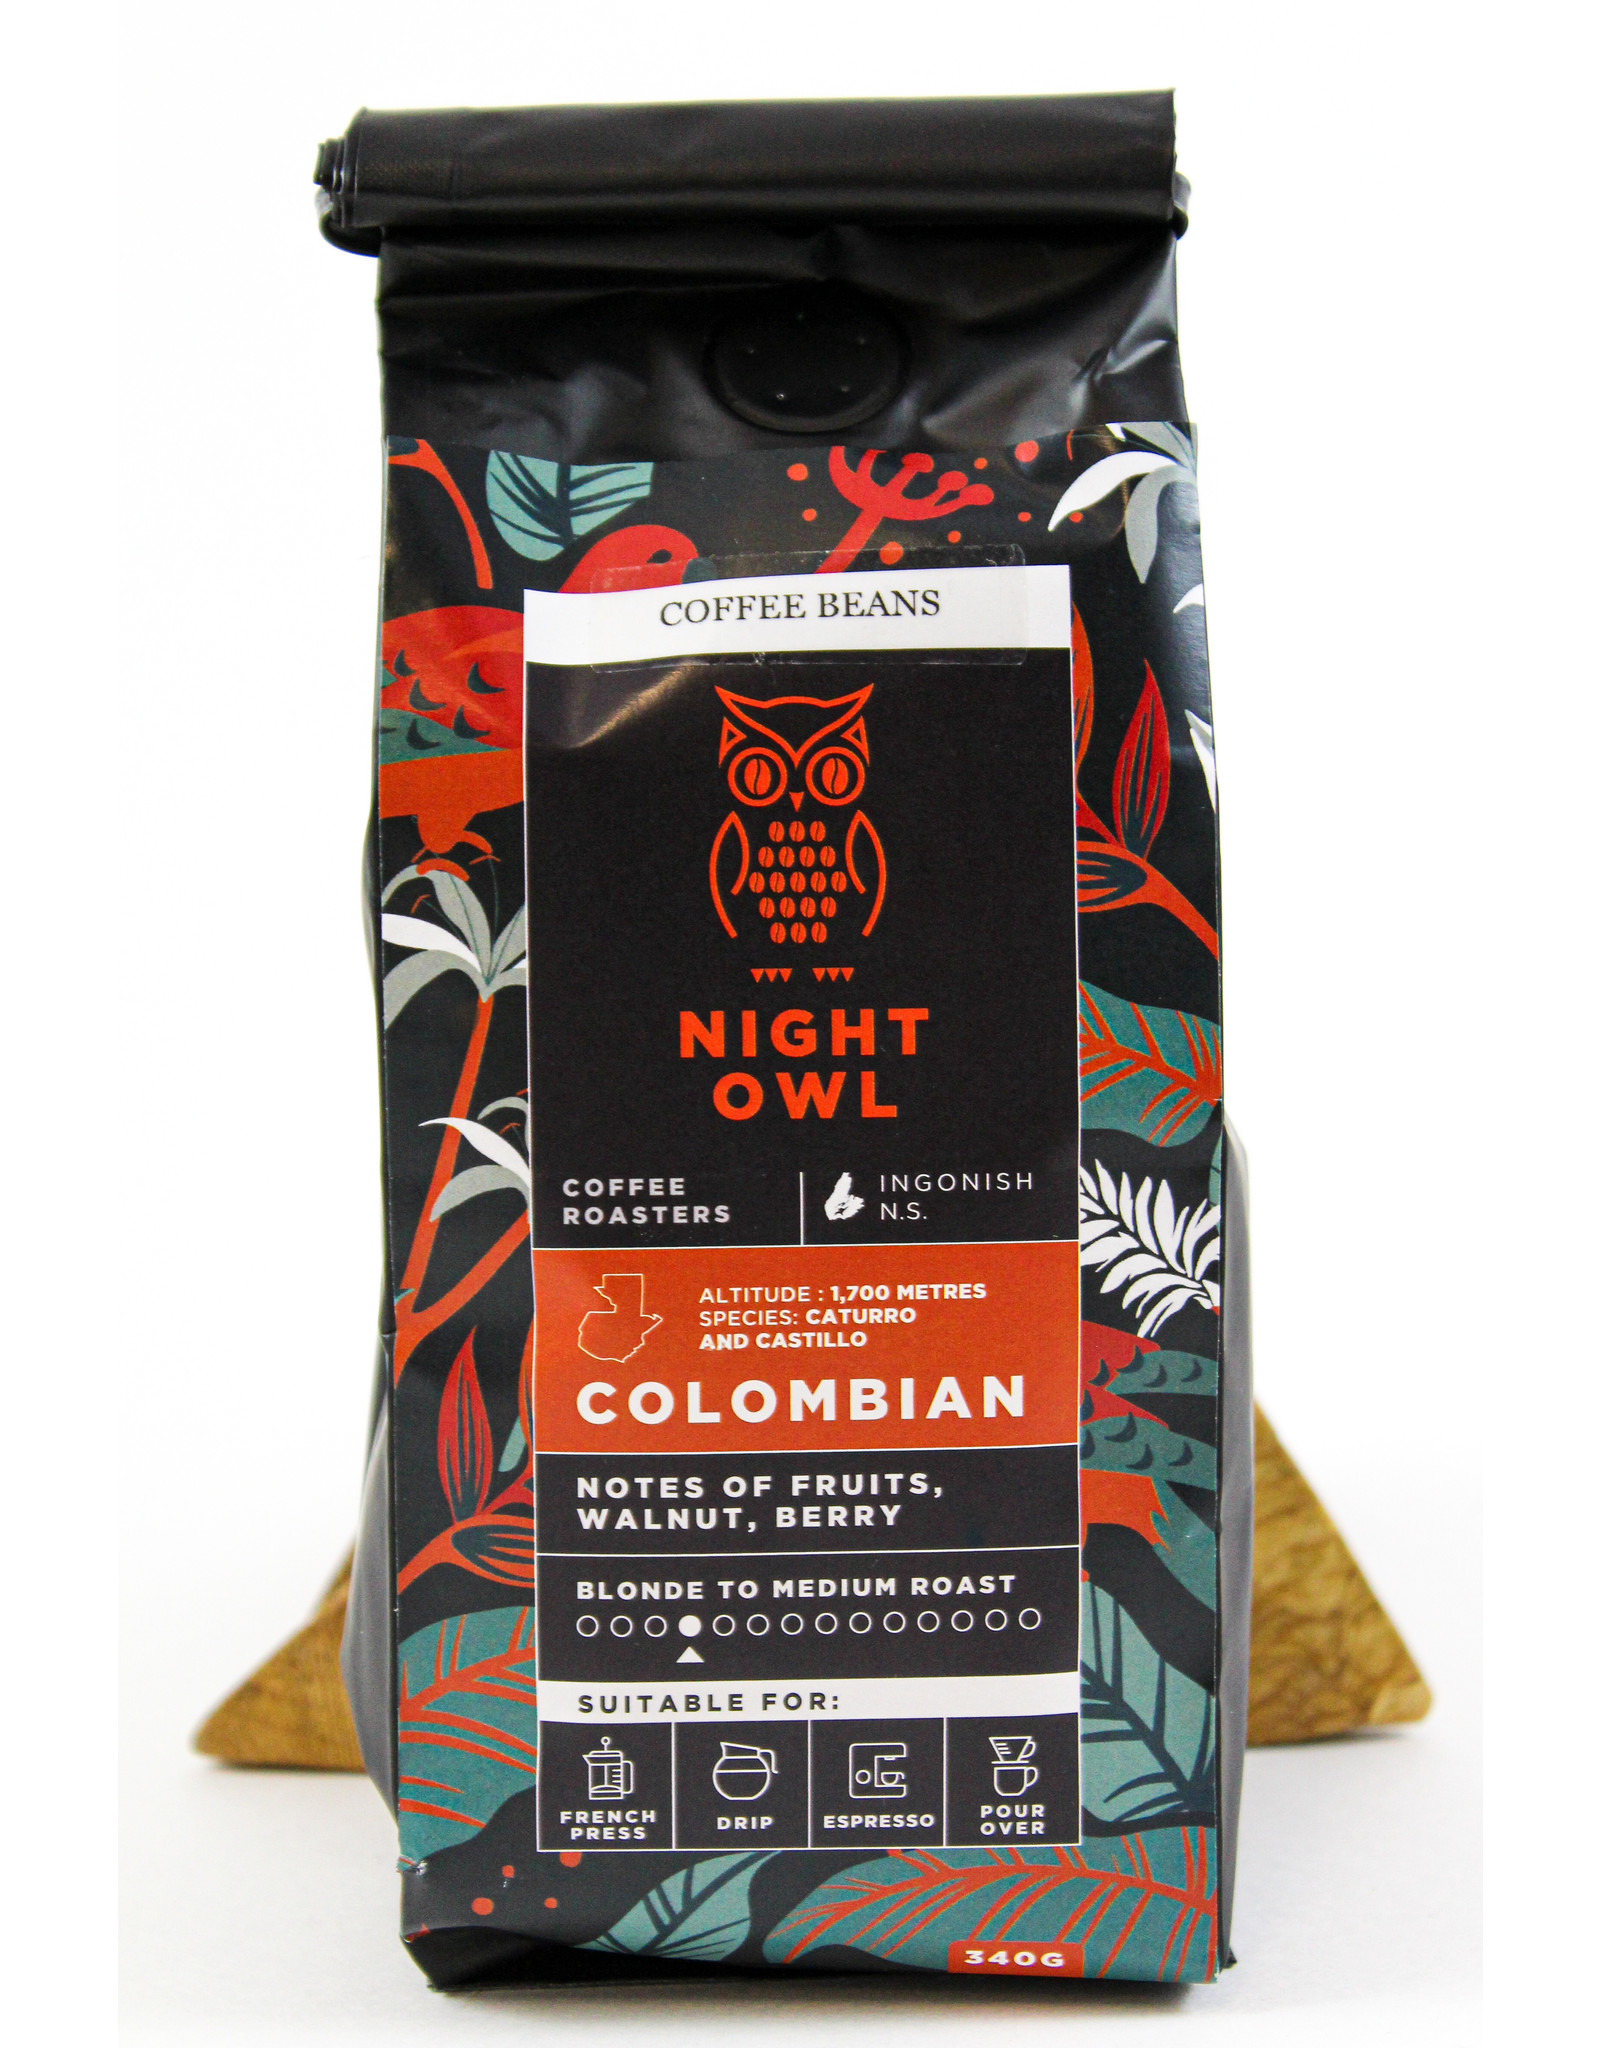 Kyla Williams/Nightowl Coffee Artisan Coffee by Night Owl